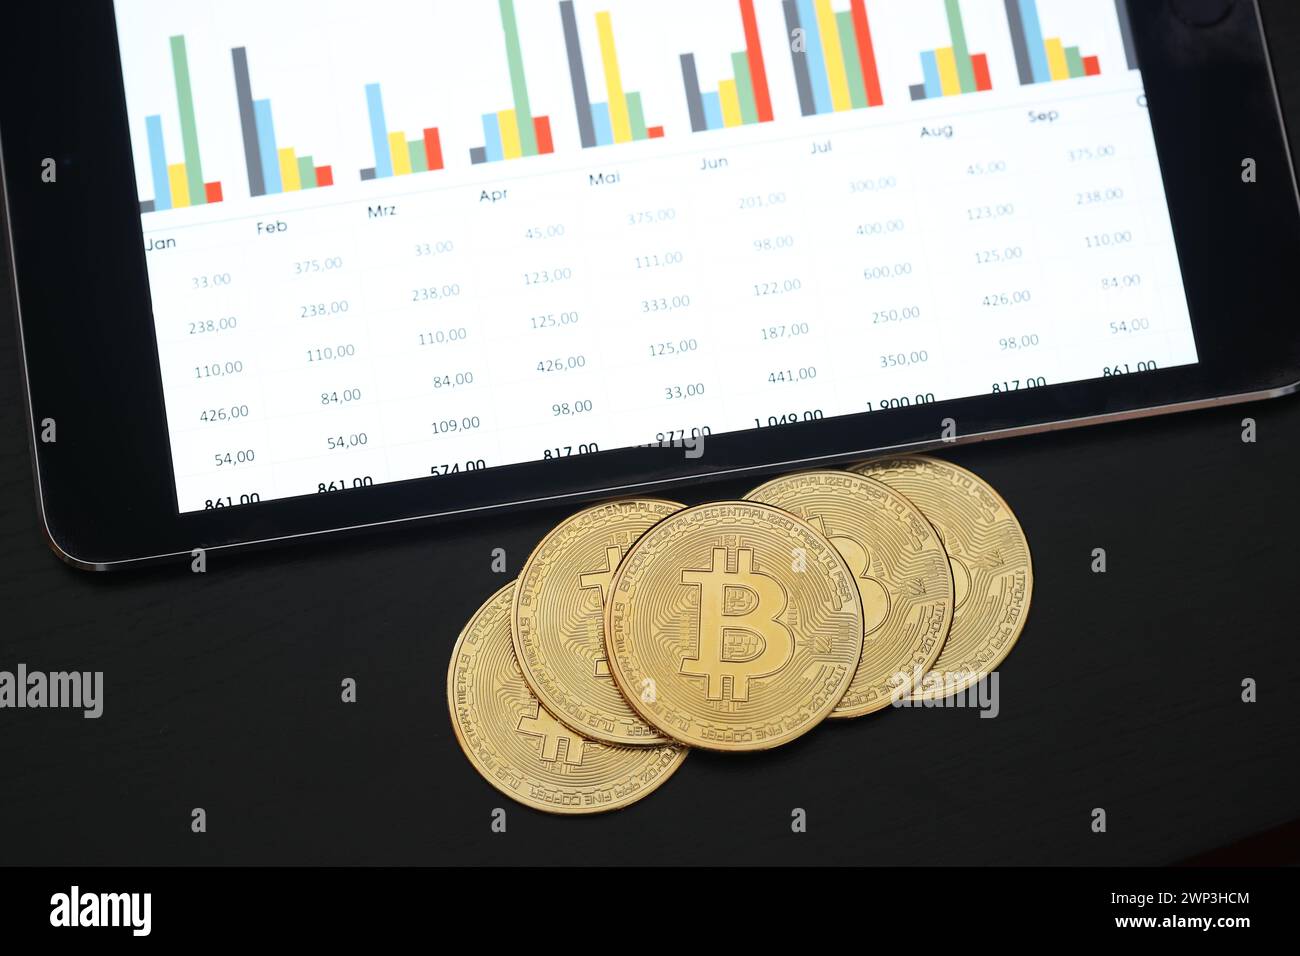 Symbolbild:  Bitcoins vor einem Tablet mit Finanzdaten - Der Bitcoin steht hoch im Kurs. Selbst Finanzdienstleister wie Paypal wollen die Kryptowährun Stock Photo